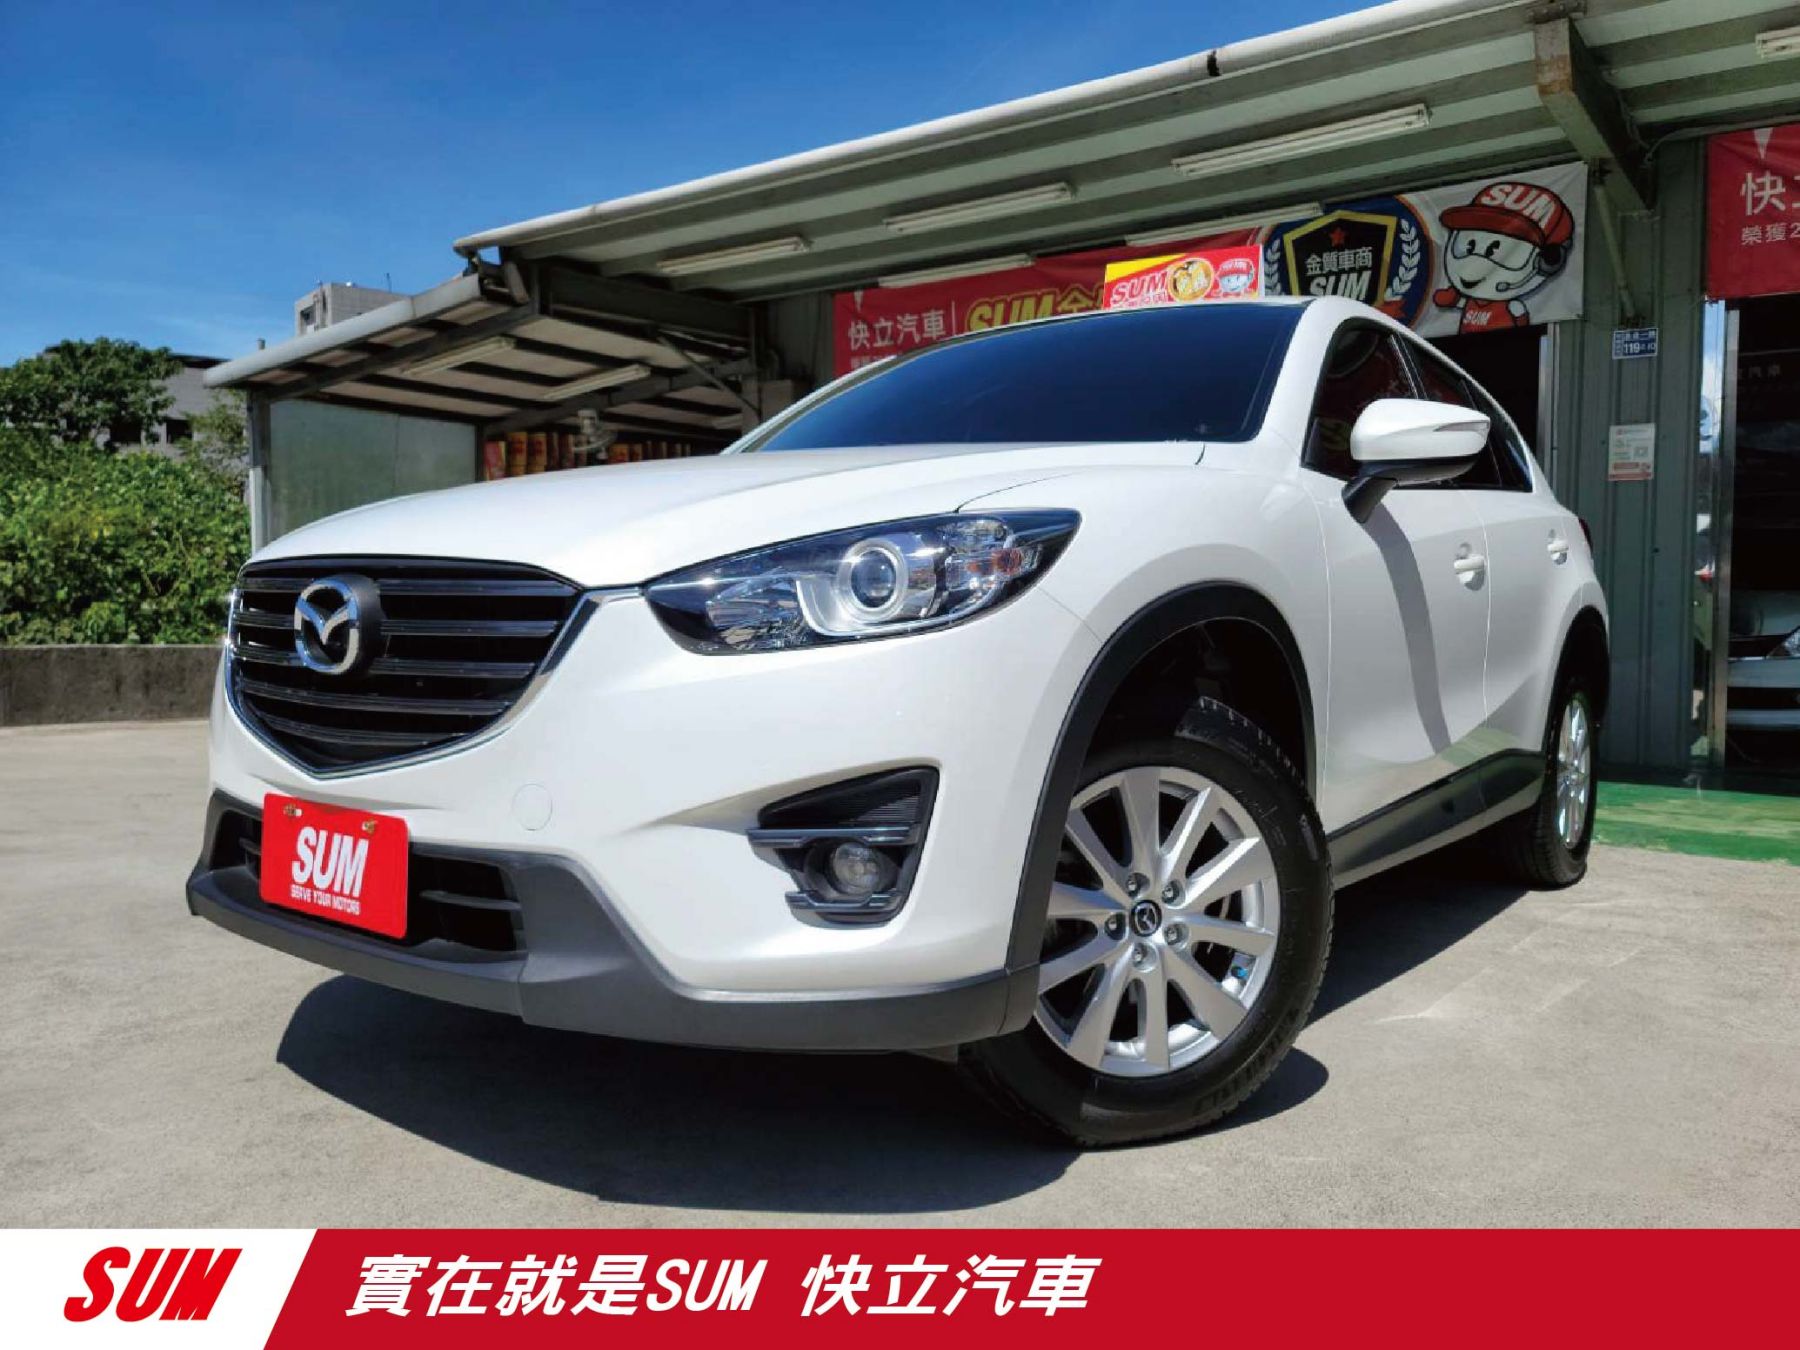 Mazda Cx 5 15年優惠價56 8萬快立汽車基隆市優質認證中古車商 Sum汽車網